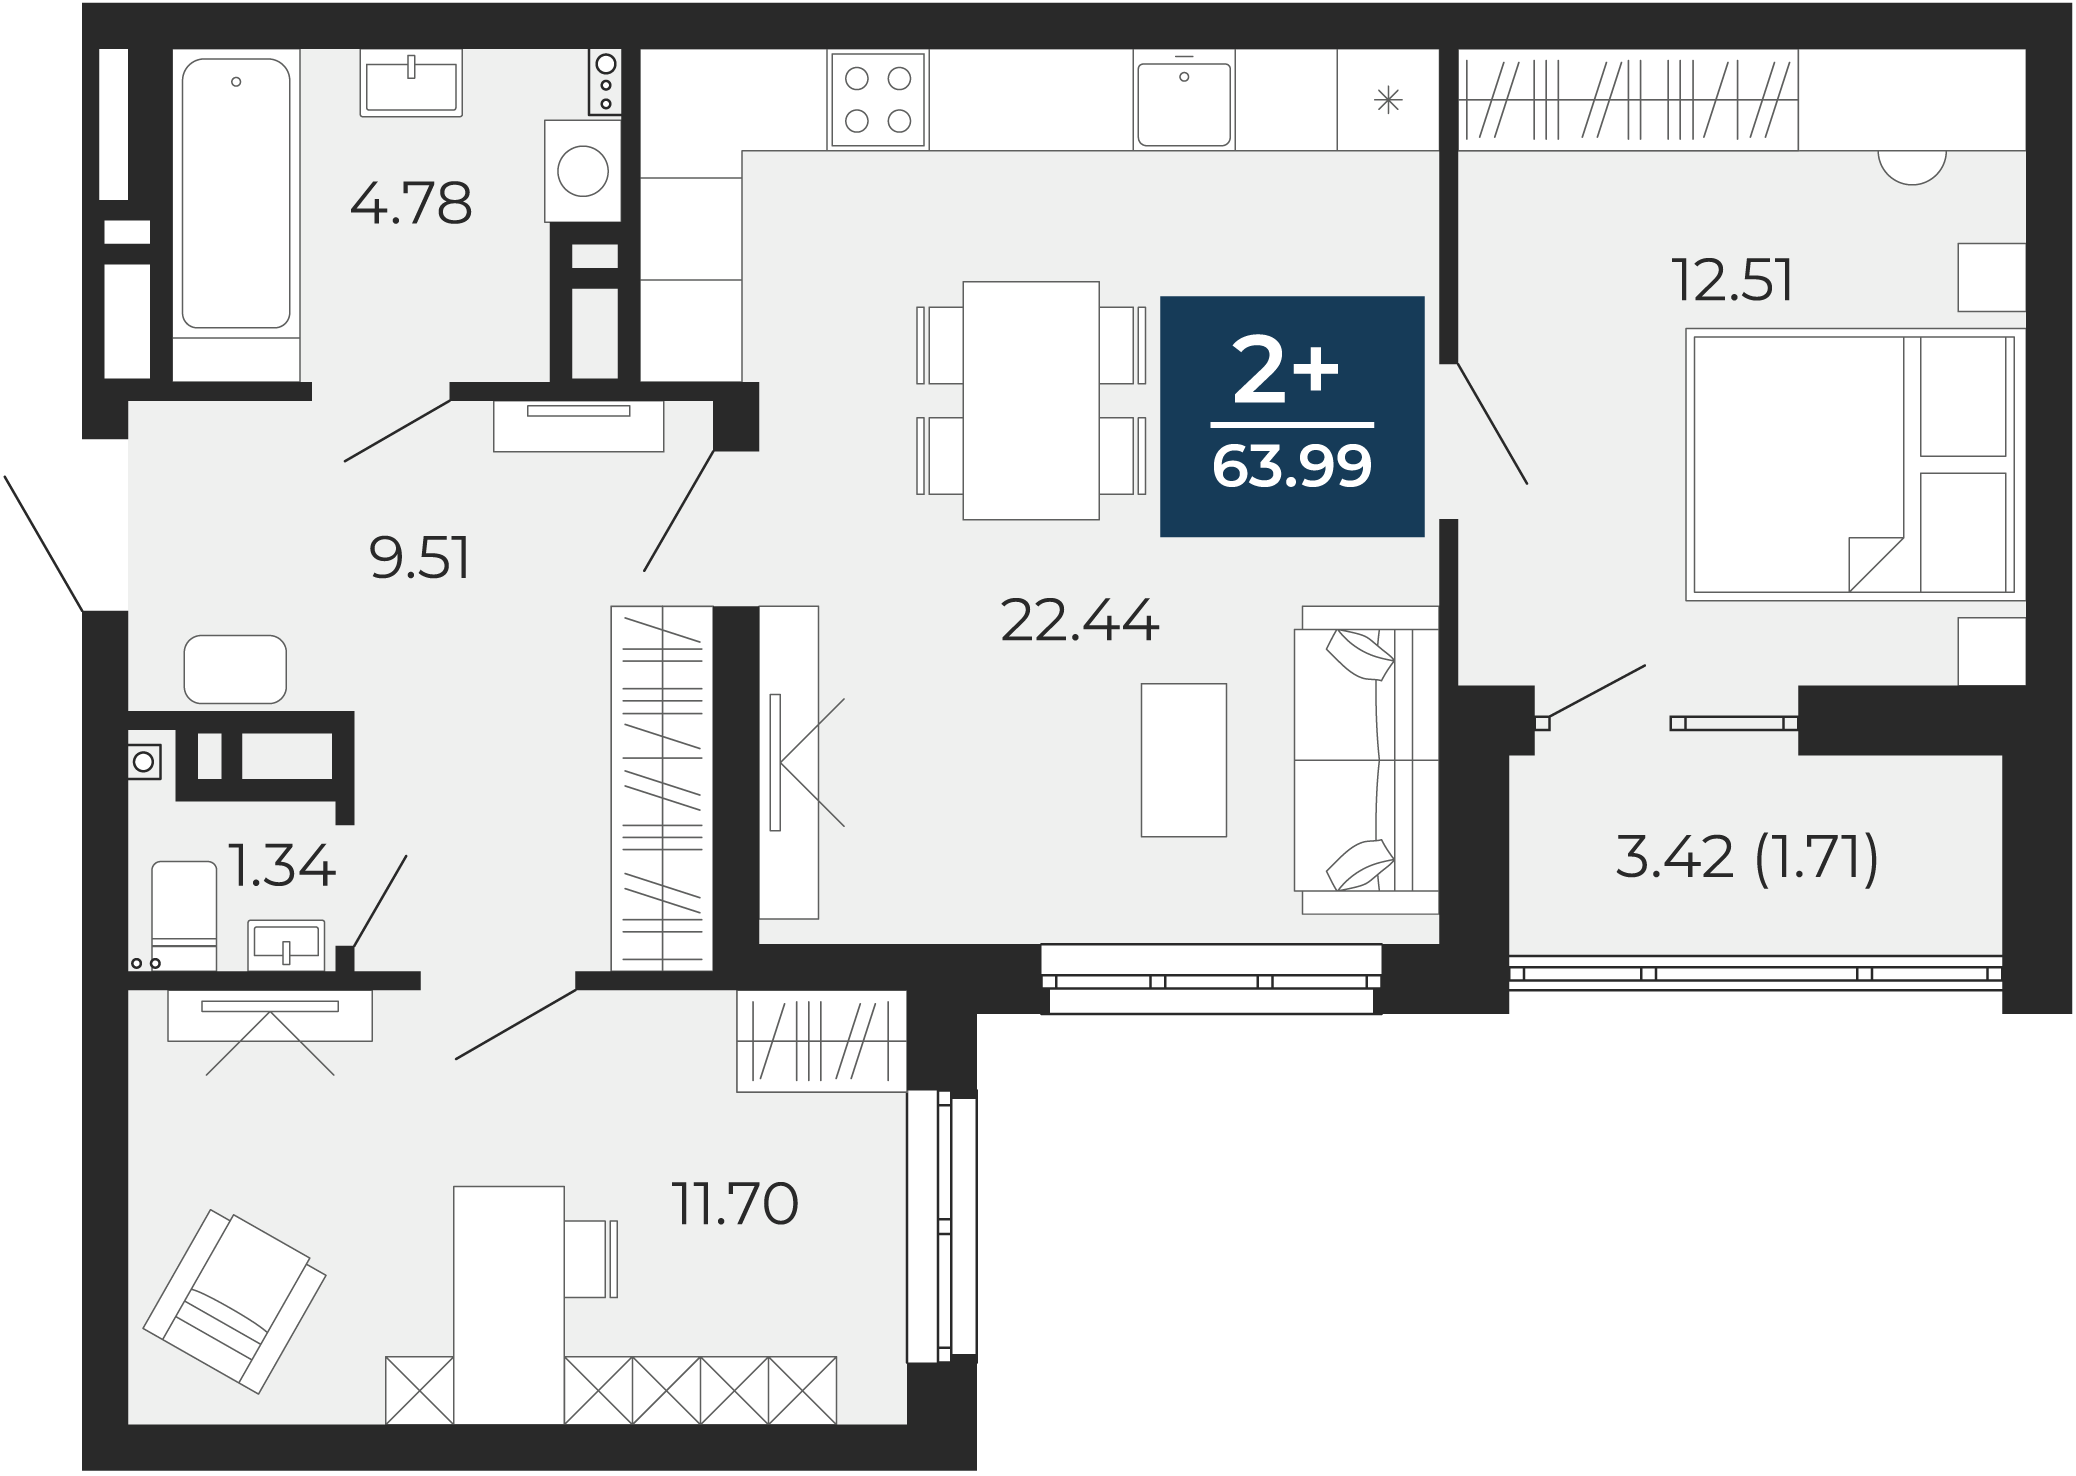 Квартира № 181, 2-комнатная, 63.99 кв. м, 12 этаж